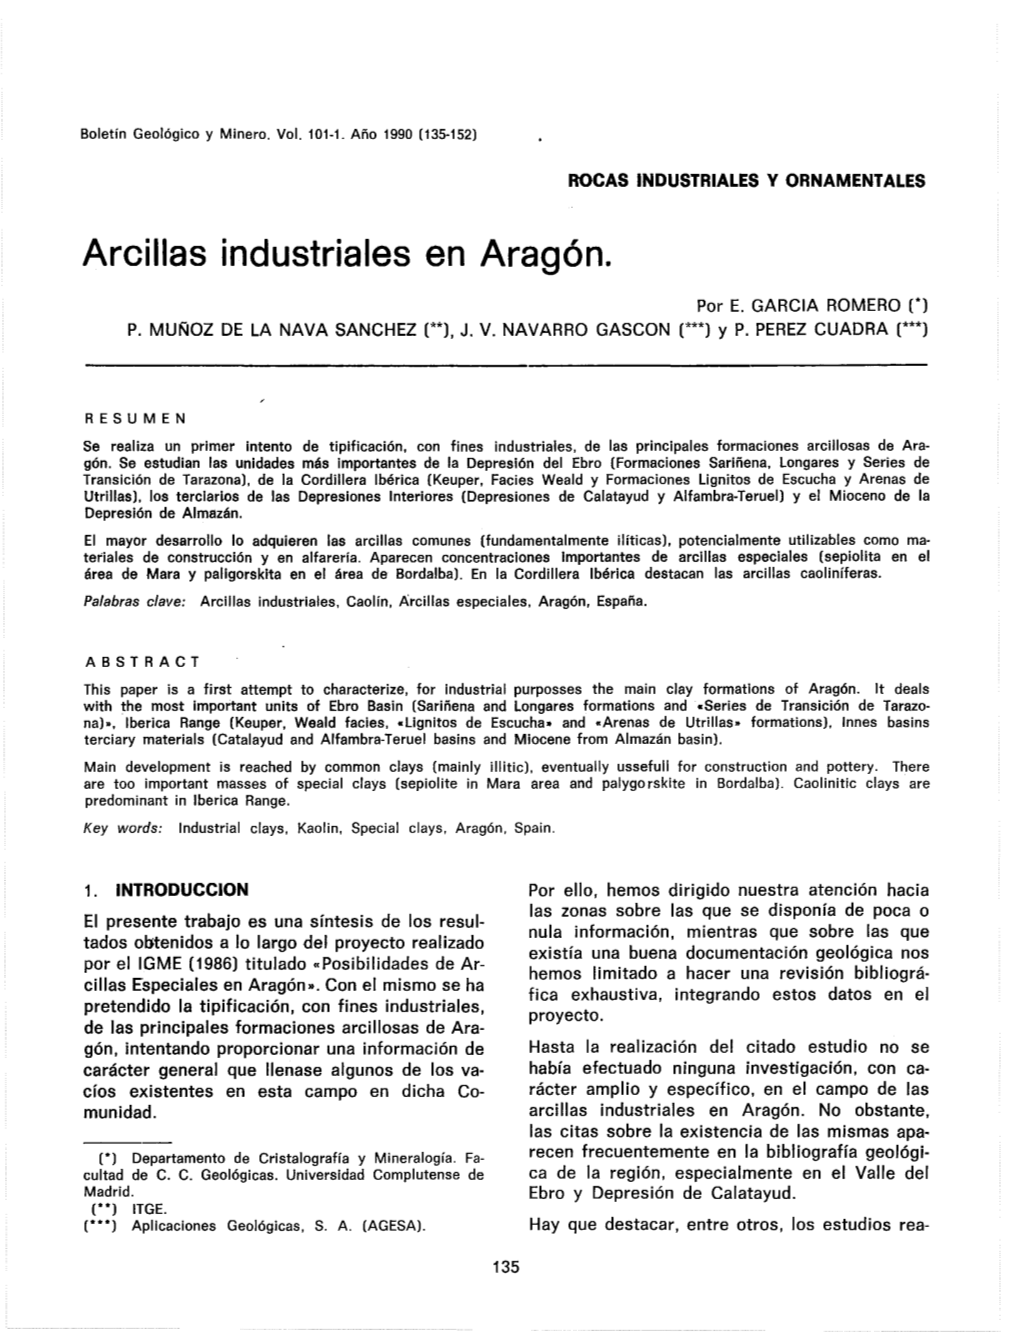 Arcillas Industriales En Aragón. CHECO, C., Y GUMIEL, J